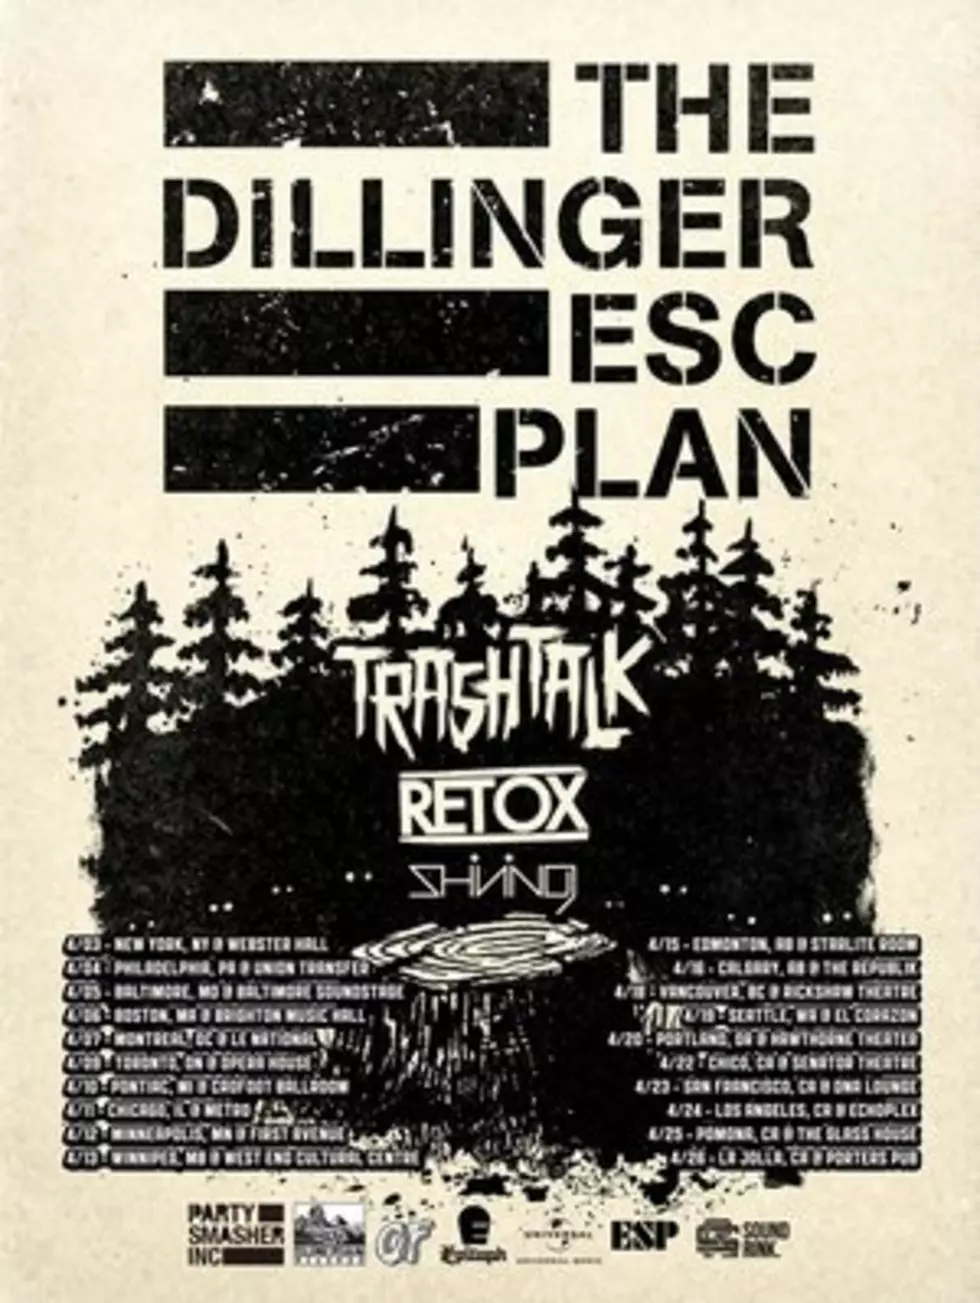 The Dillinger Escape Plan Announces Spring Tour